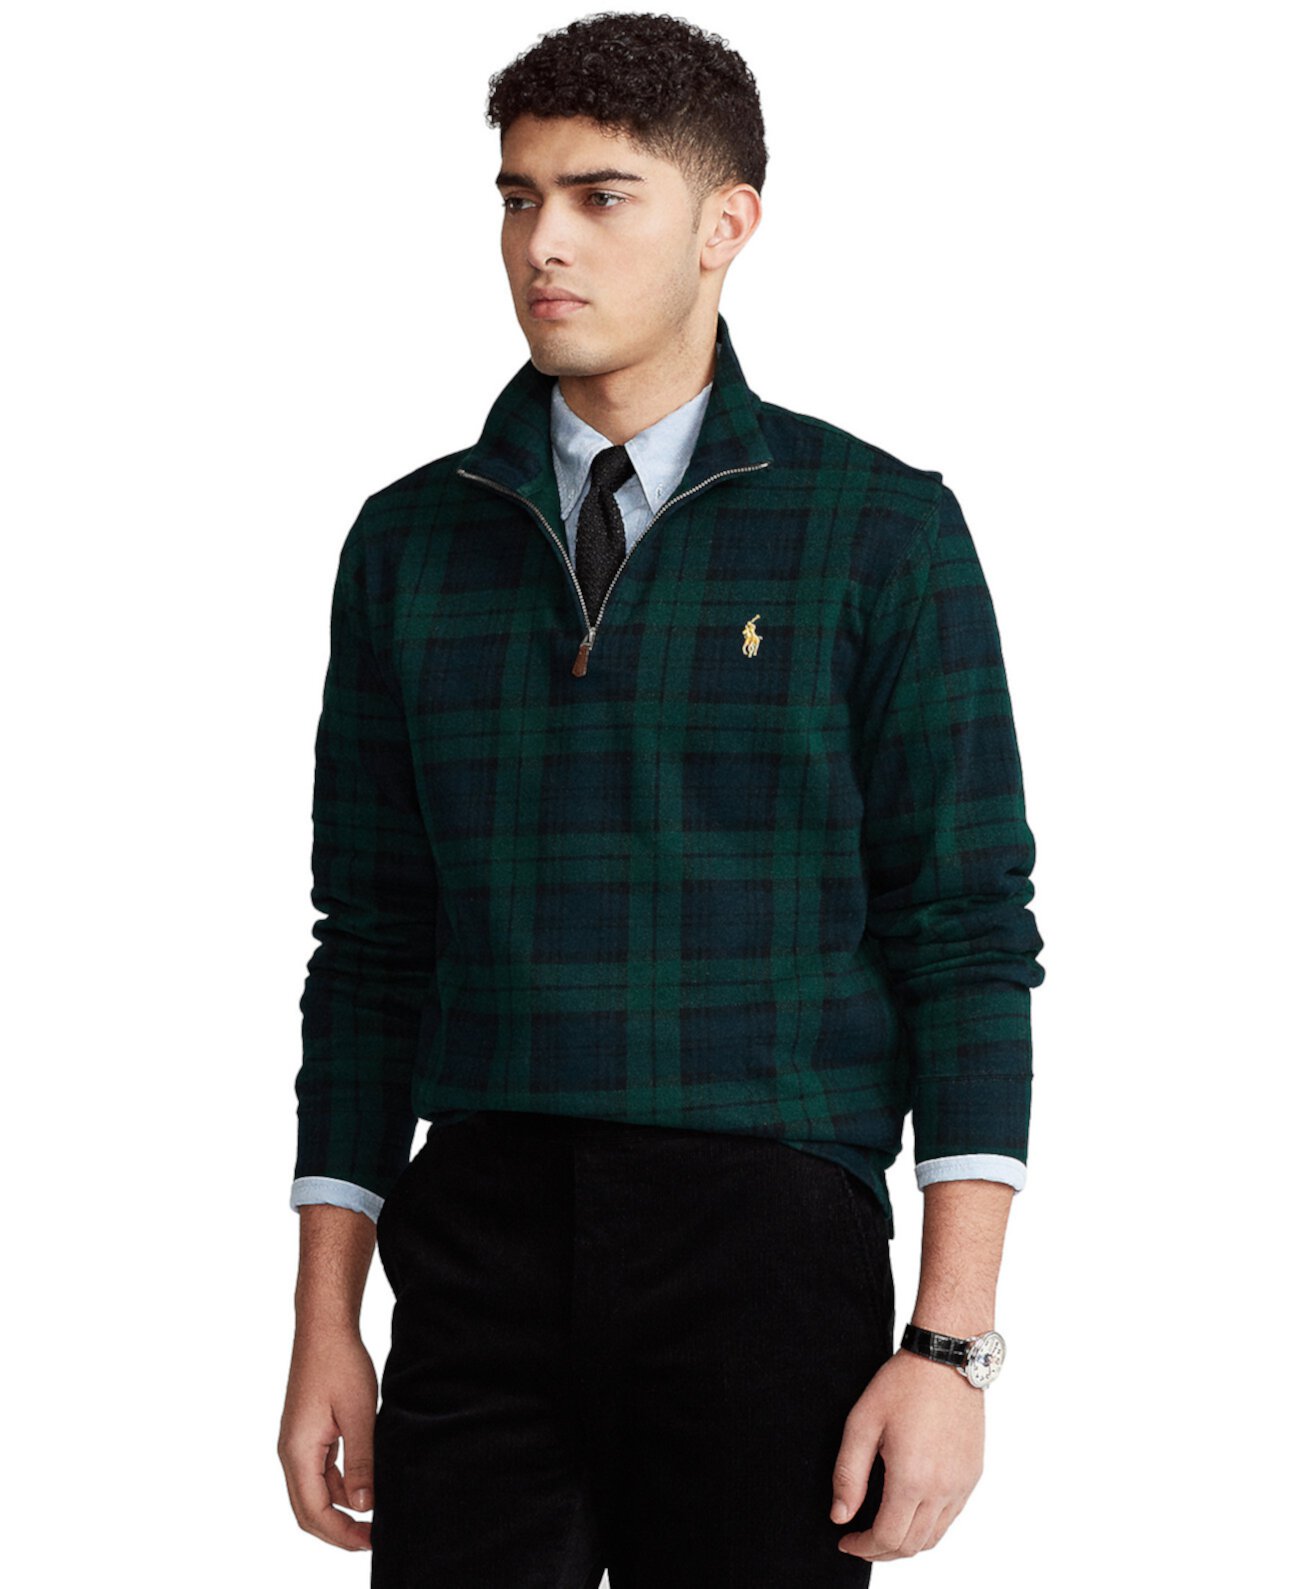 Мужской пуловер с застежкой-молнией Polo Ralph Lauren Polo Ralph Lauren